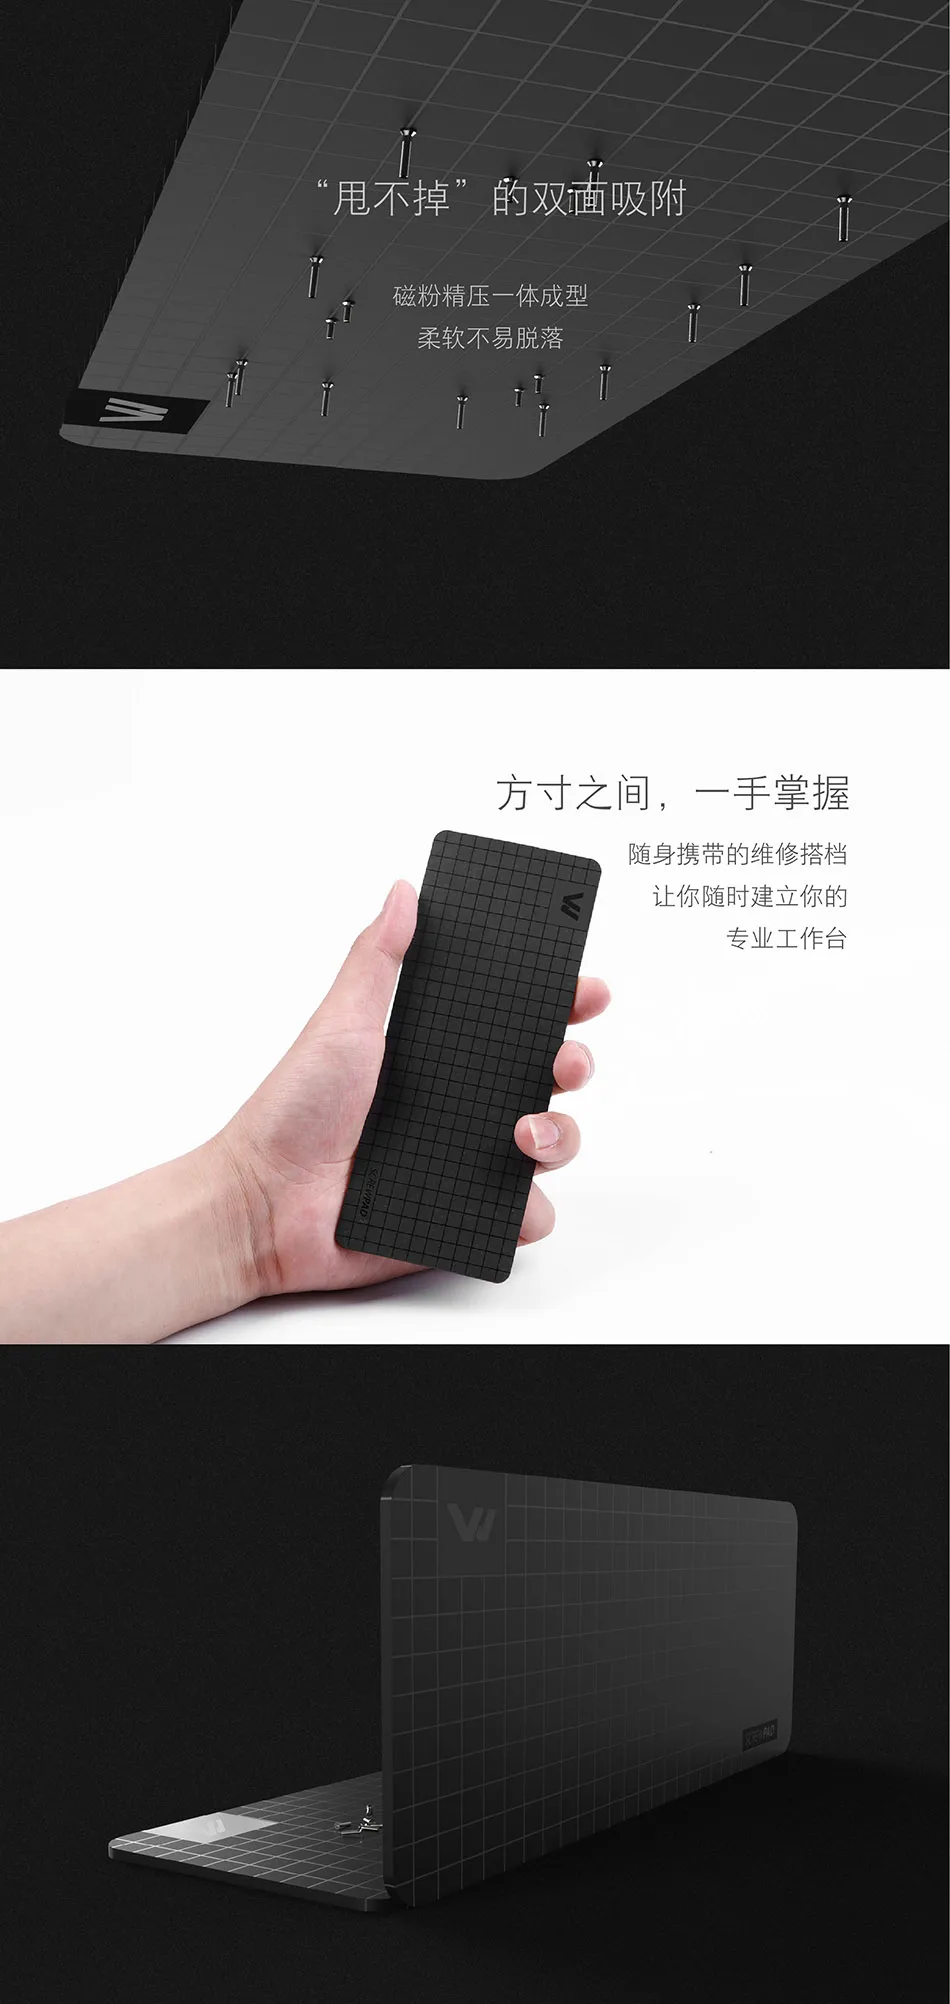 Набор винтов Xiaomi Mijia Wiha для ежедневного использования, 24 прецизионных магнитных биты, алюминиевая коробка, отвертка, xiaomi smart home Kit